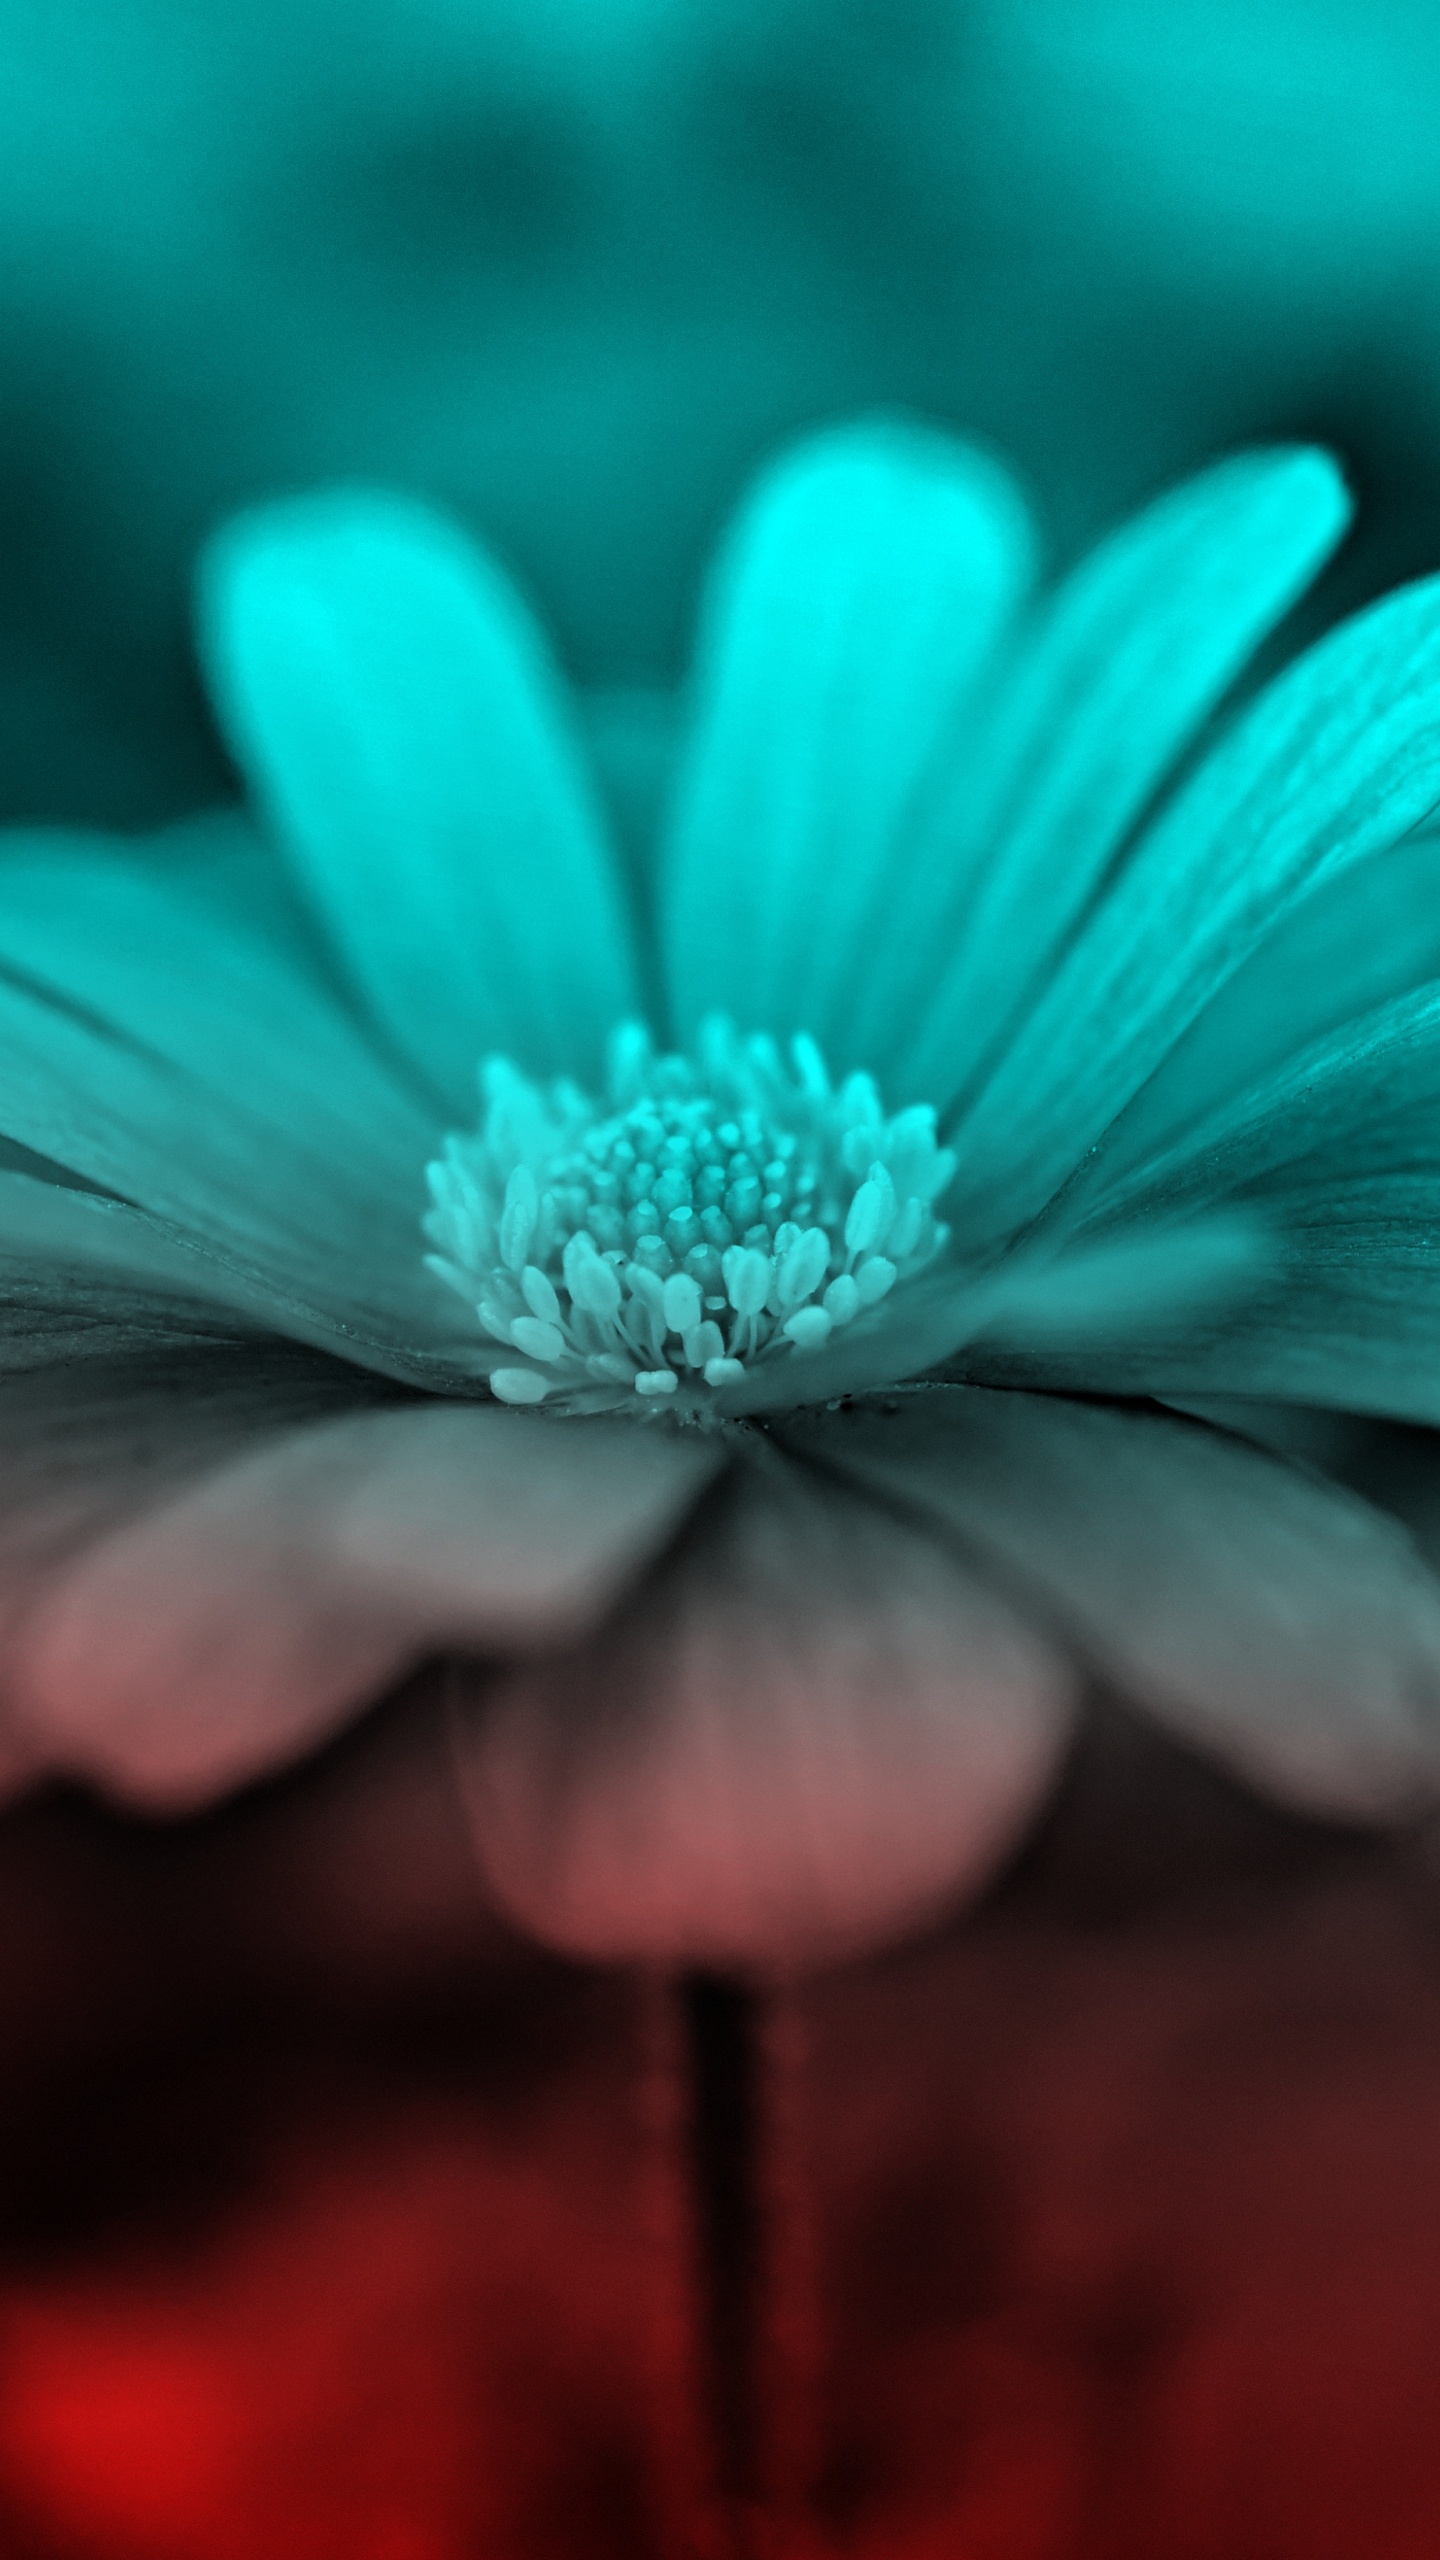 Purple Flower in Tilt Shift Lens. Wallpaper in 1440x2560 Resolution